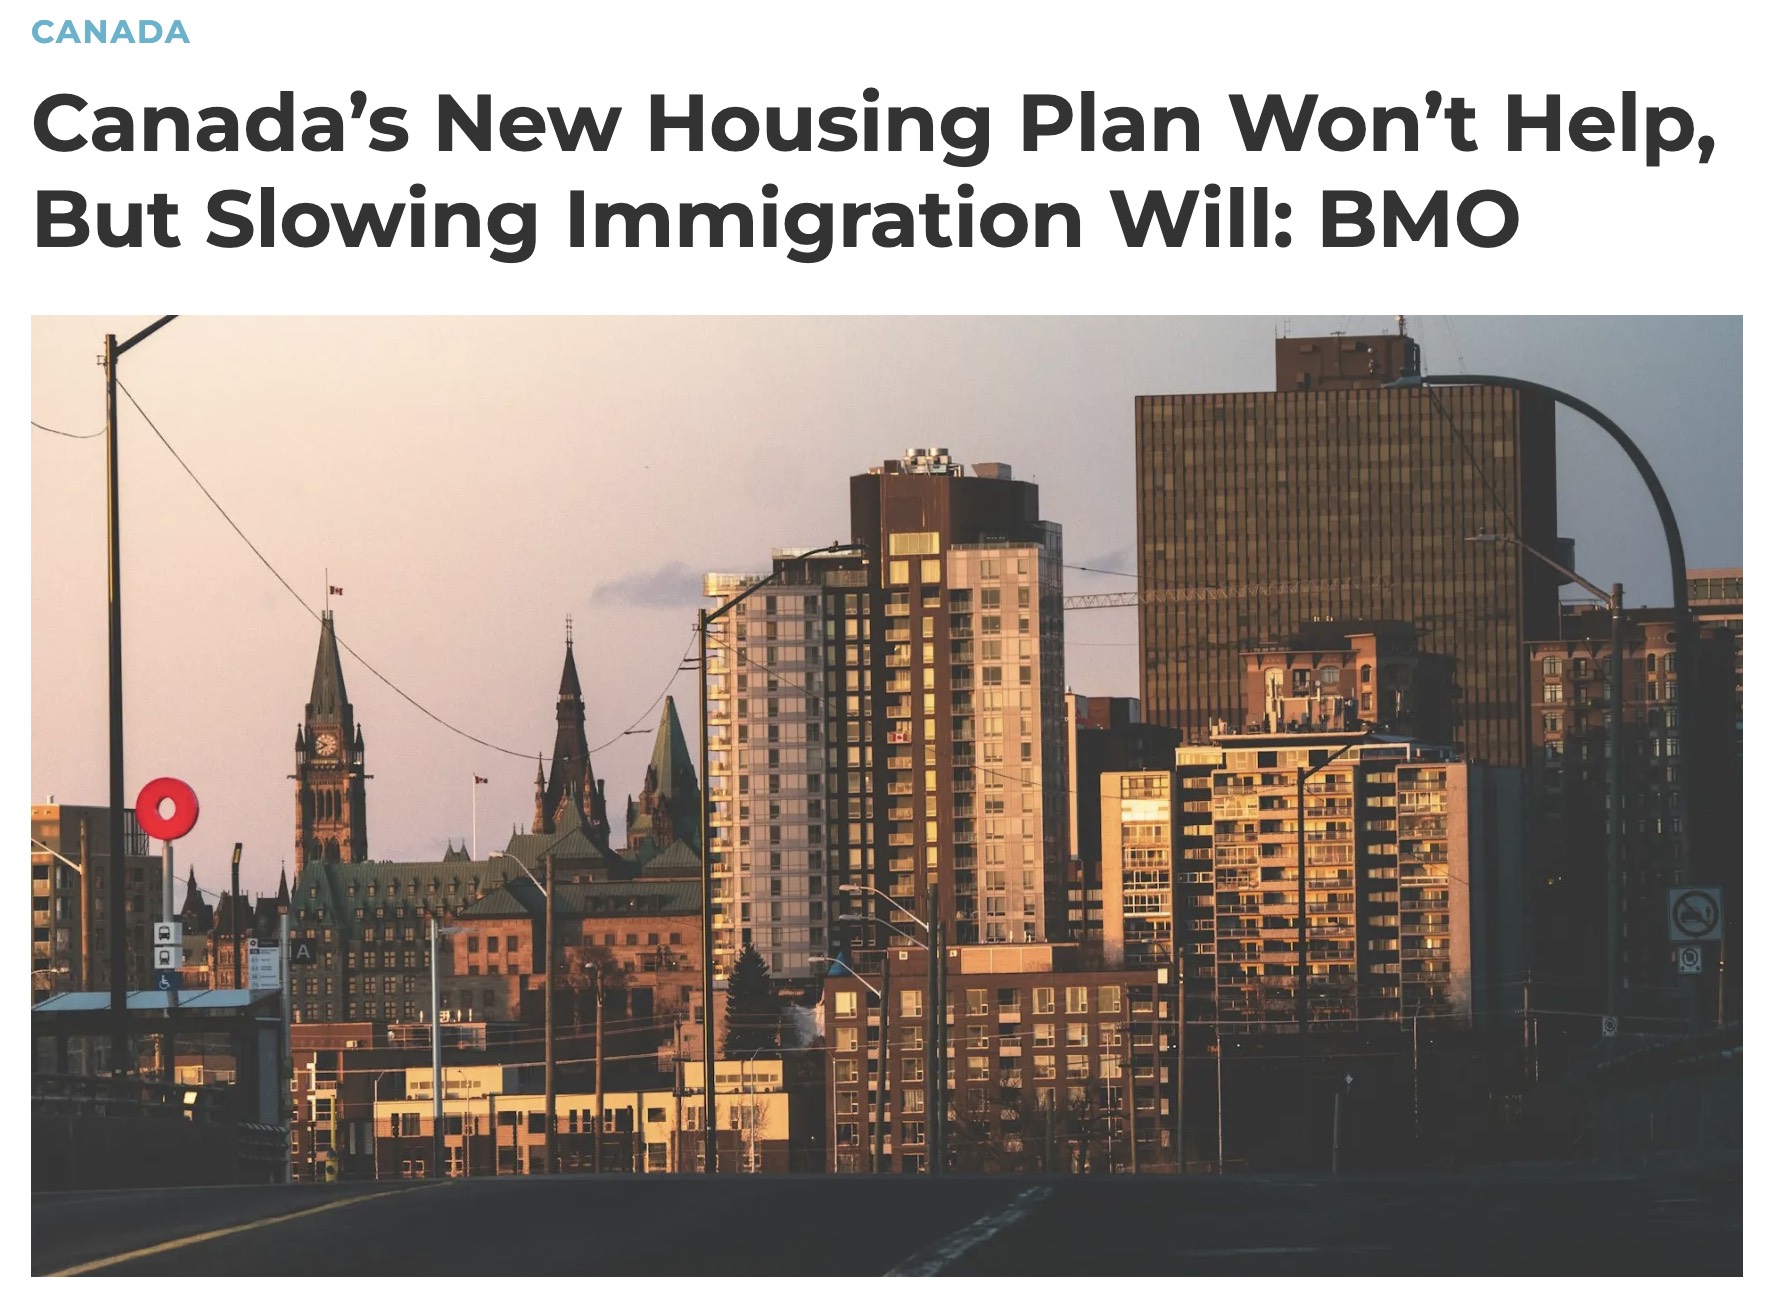 BMO：加拿大新住房计划无济于事，但减缓移民速度会有所帮助